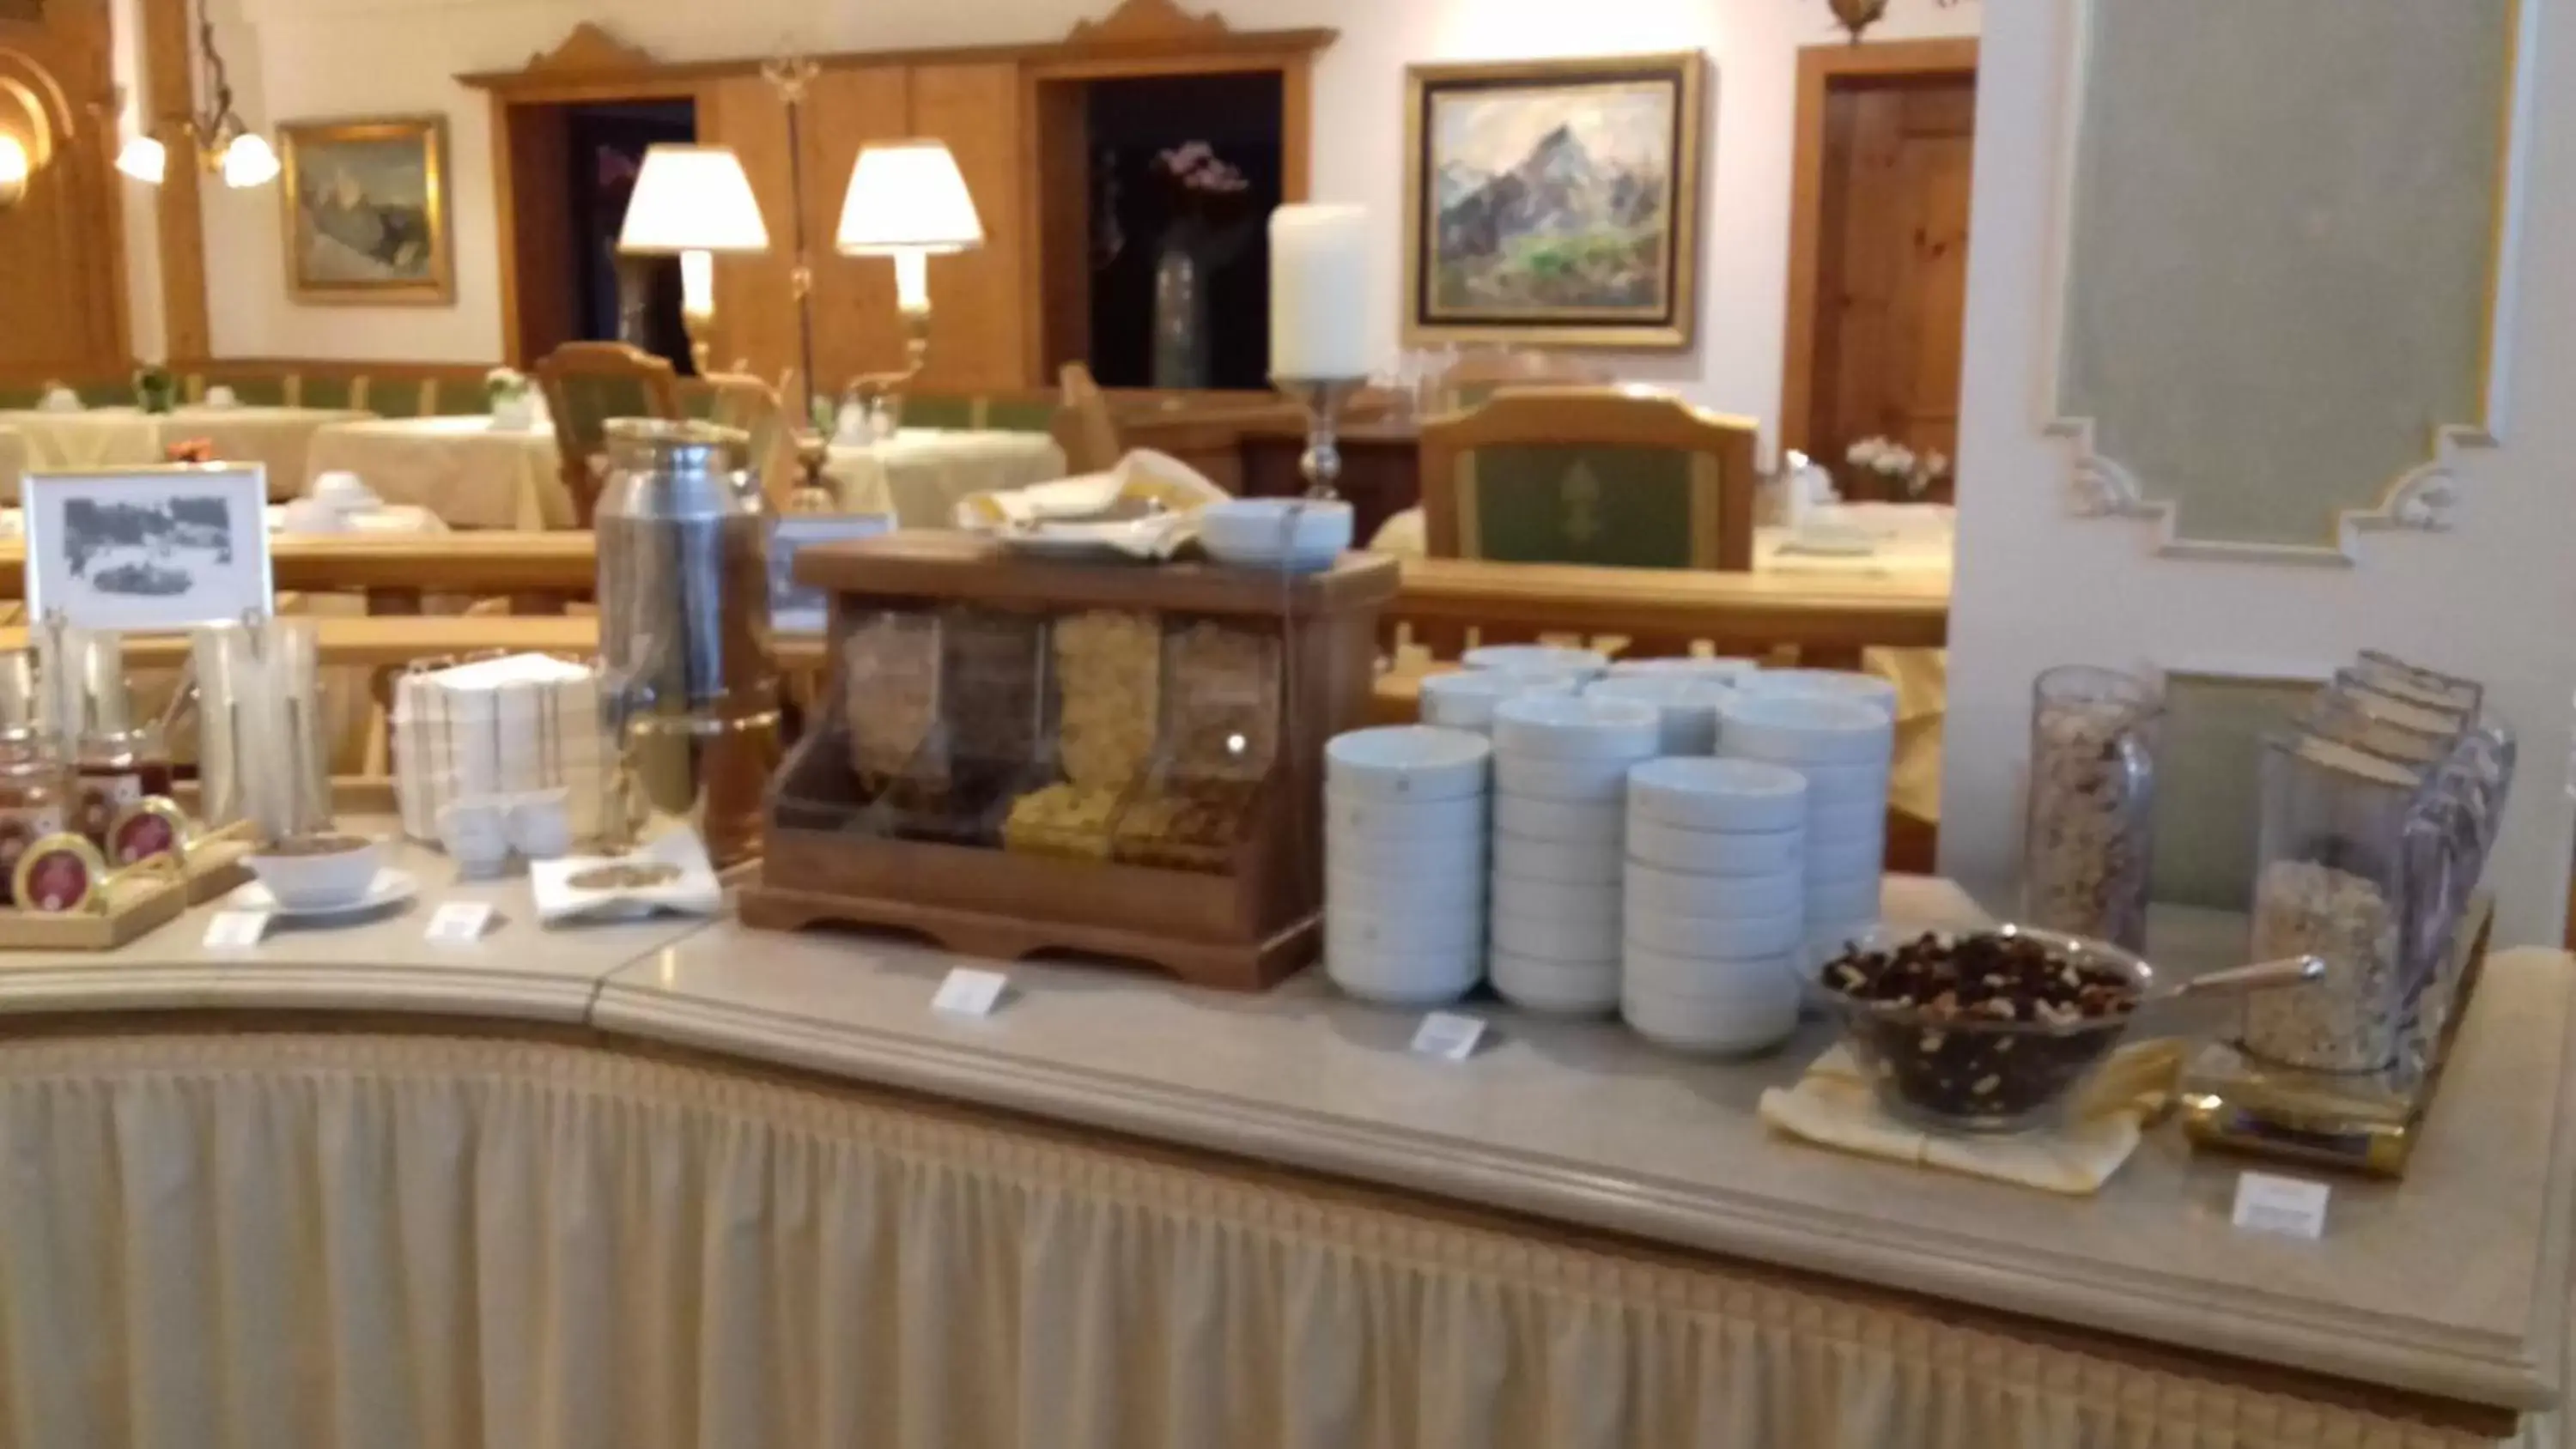 Buffet breakfast in Grand Hotel Zell am See